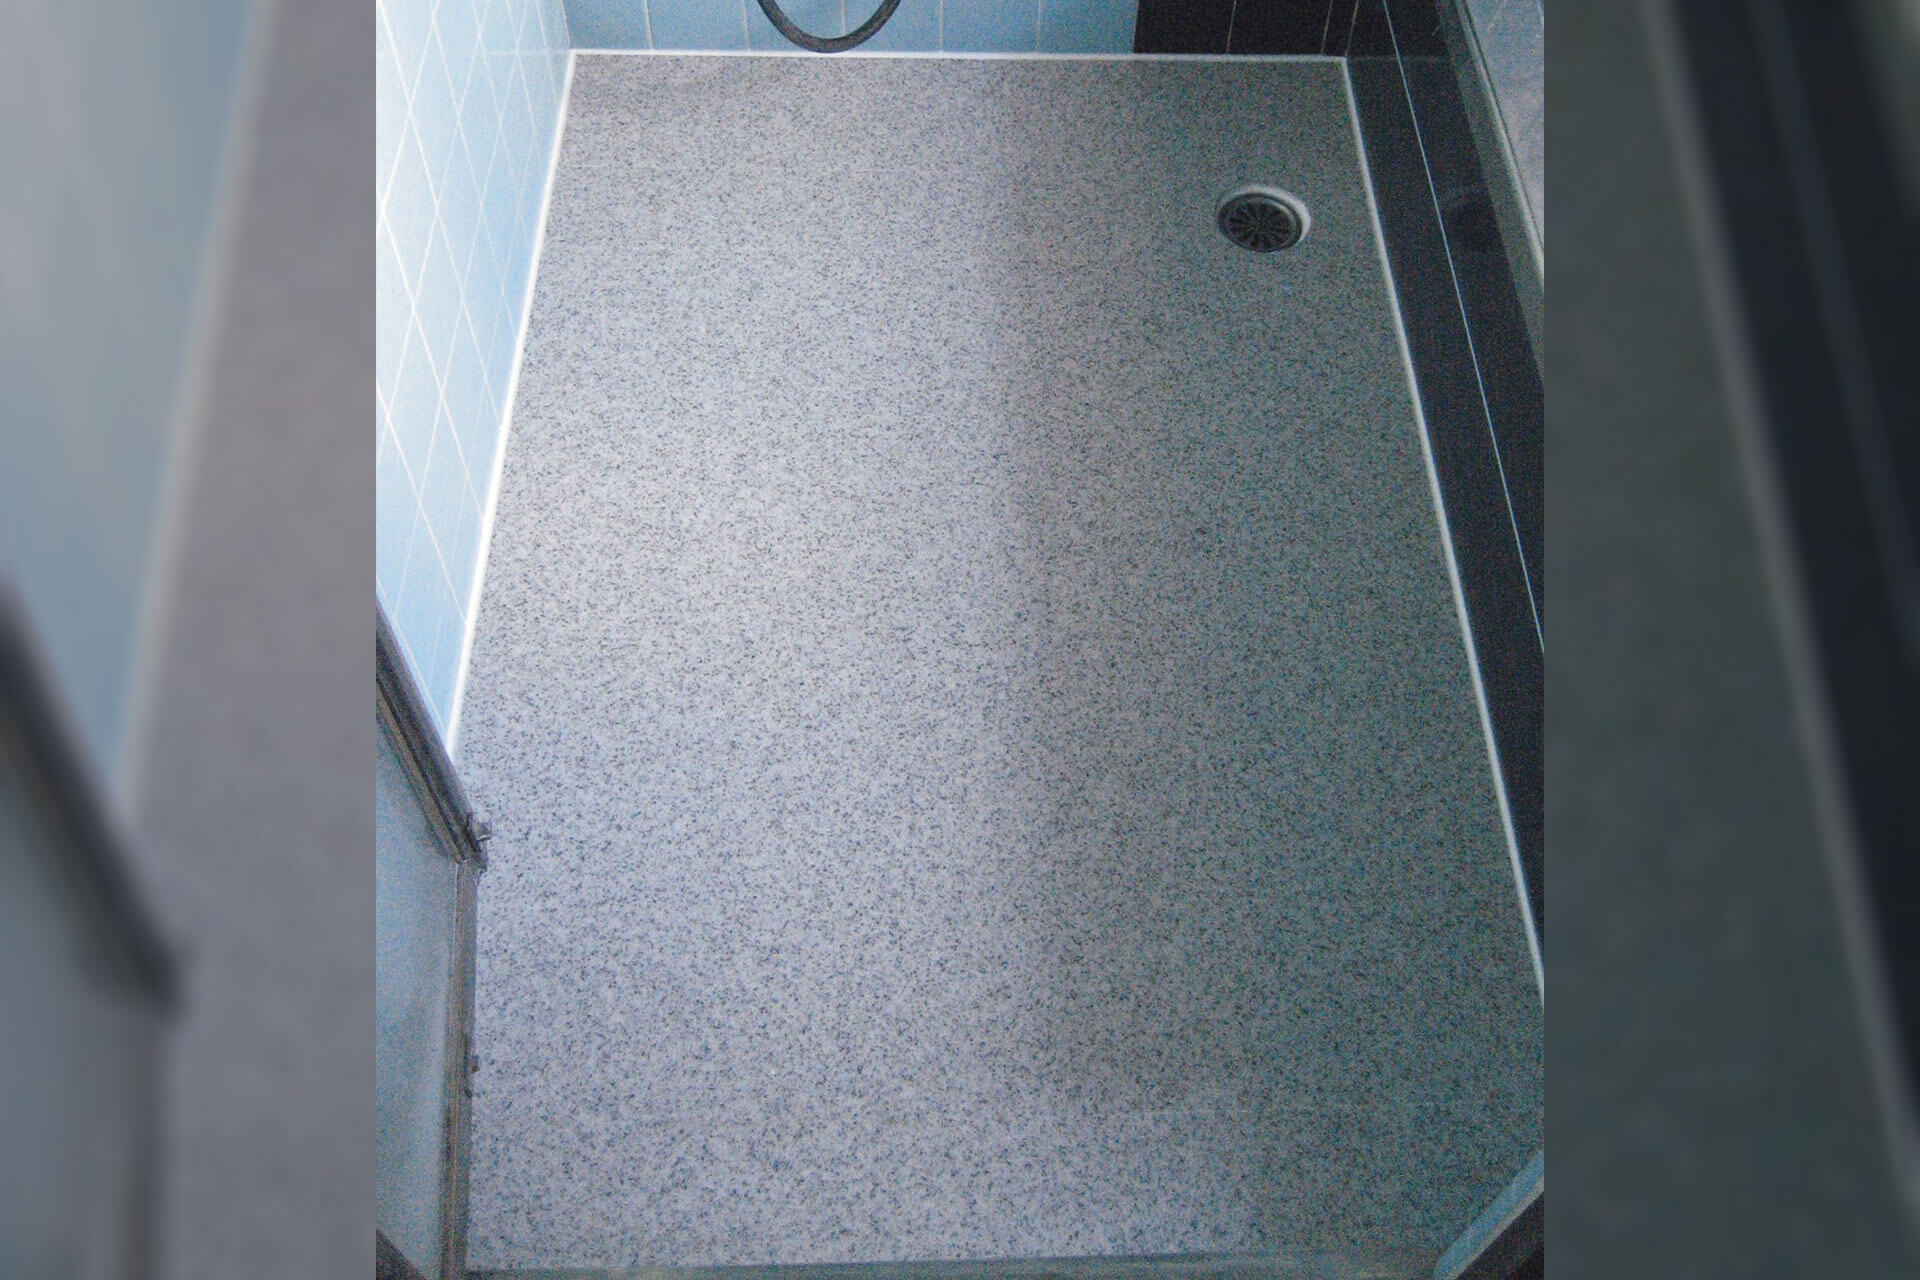 タイル床をハイブリッドストーン アベイラス スーパー浴室床材ダークグレー色で改修した様子